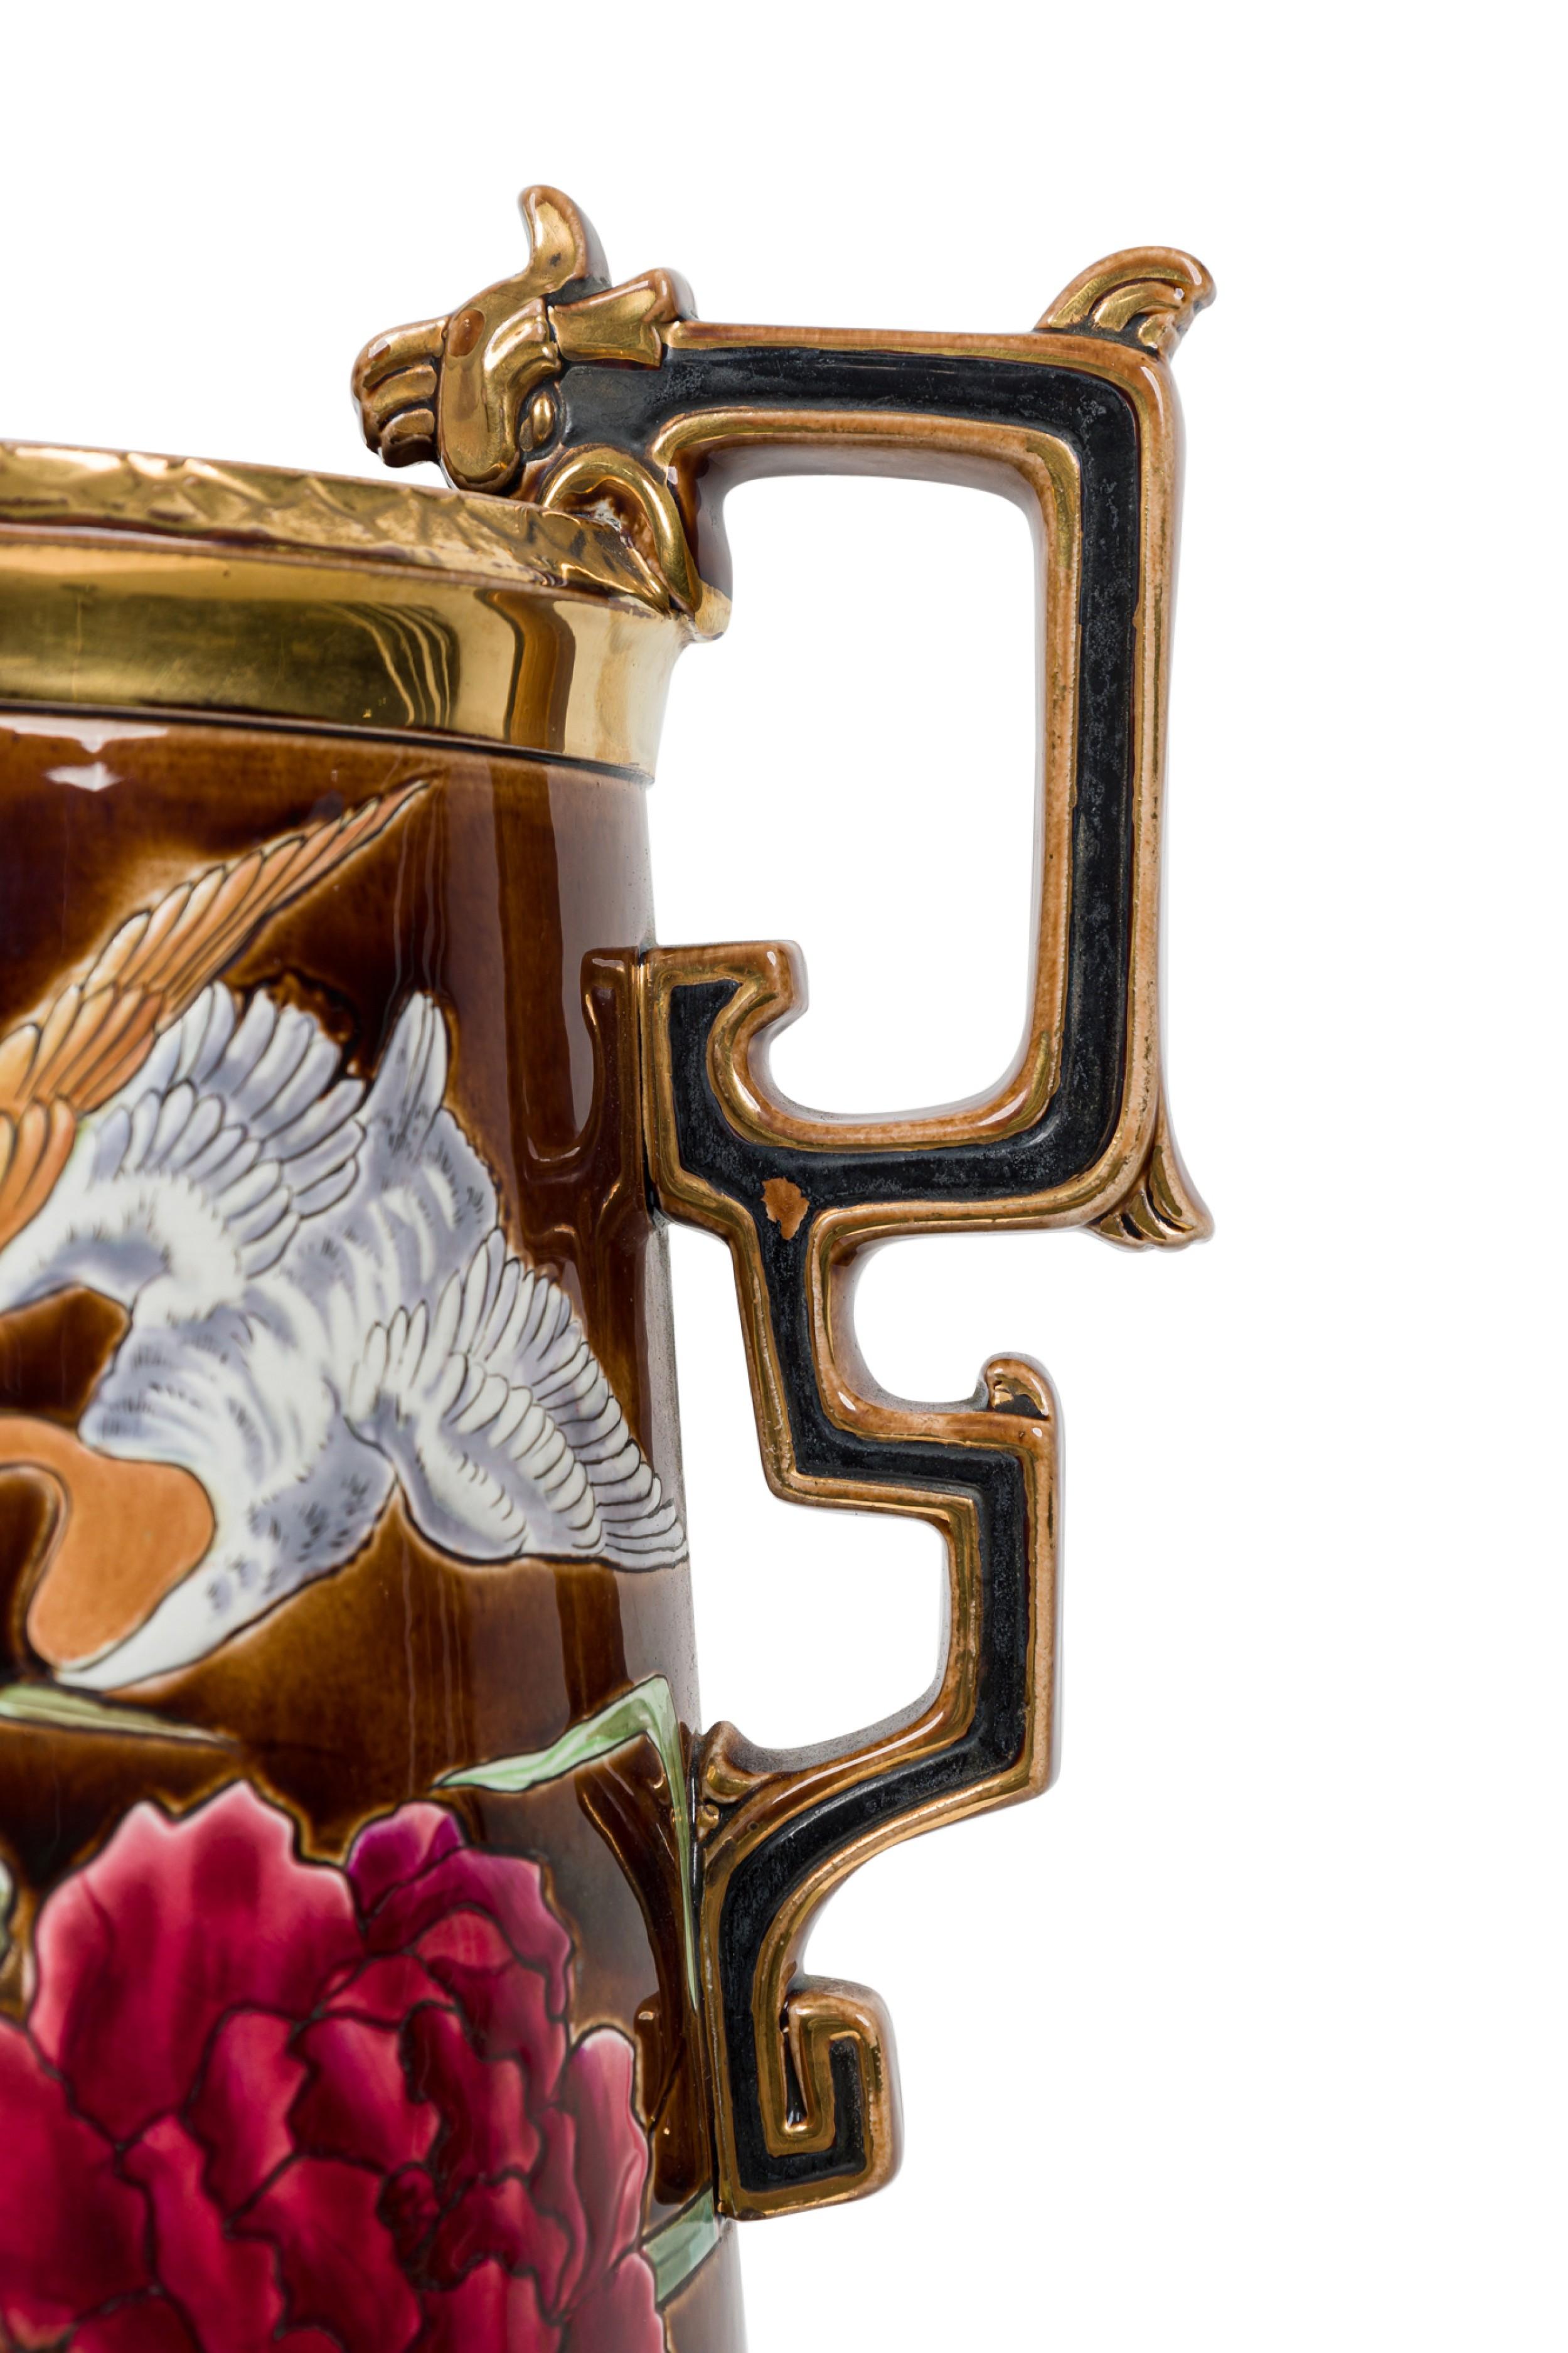 Niederländische viktorianische (19. Jh.) Monumentalvase aus Keramik in eiförmiger Fußform mit verschnörkelten Henkeln, die eine Naturszene in flachem Relief zeigt: eine Ente, die über einer üppigen Flora schwebt, gemalt in kräftigen Farben auf